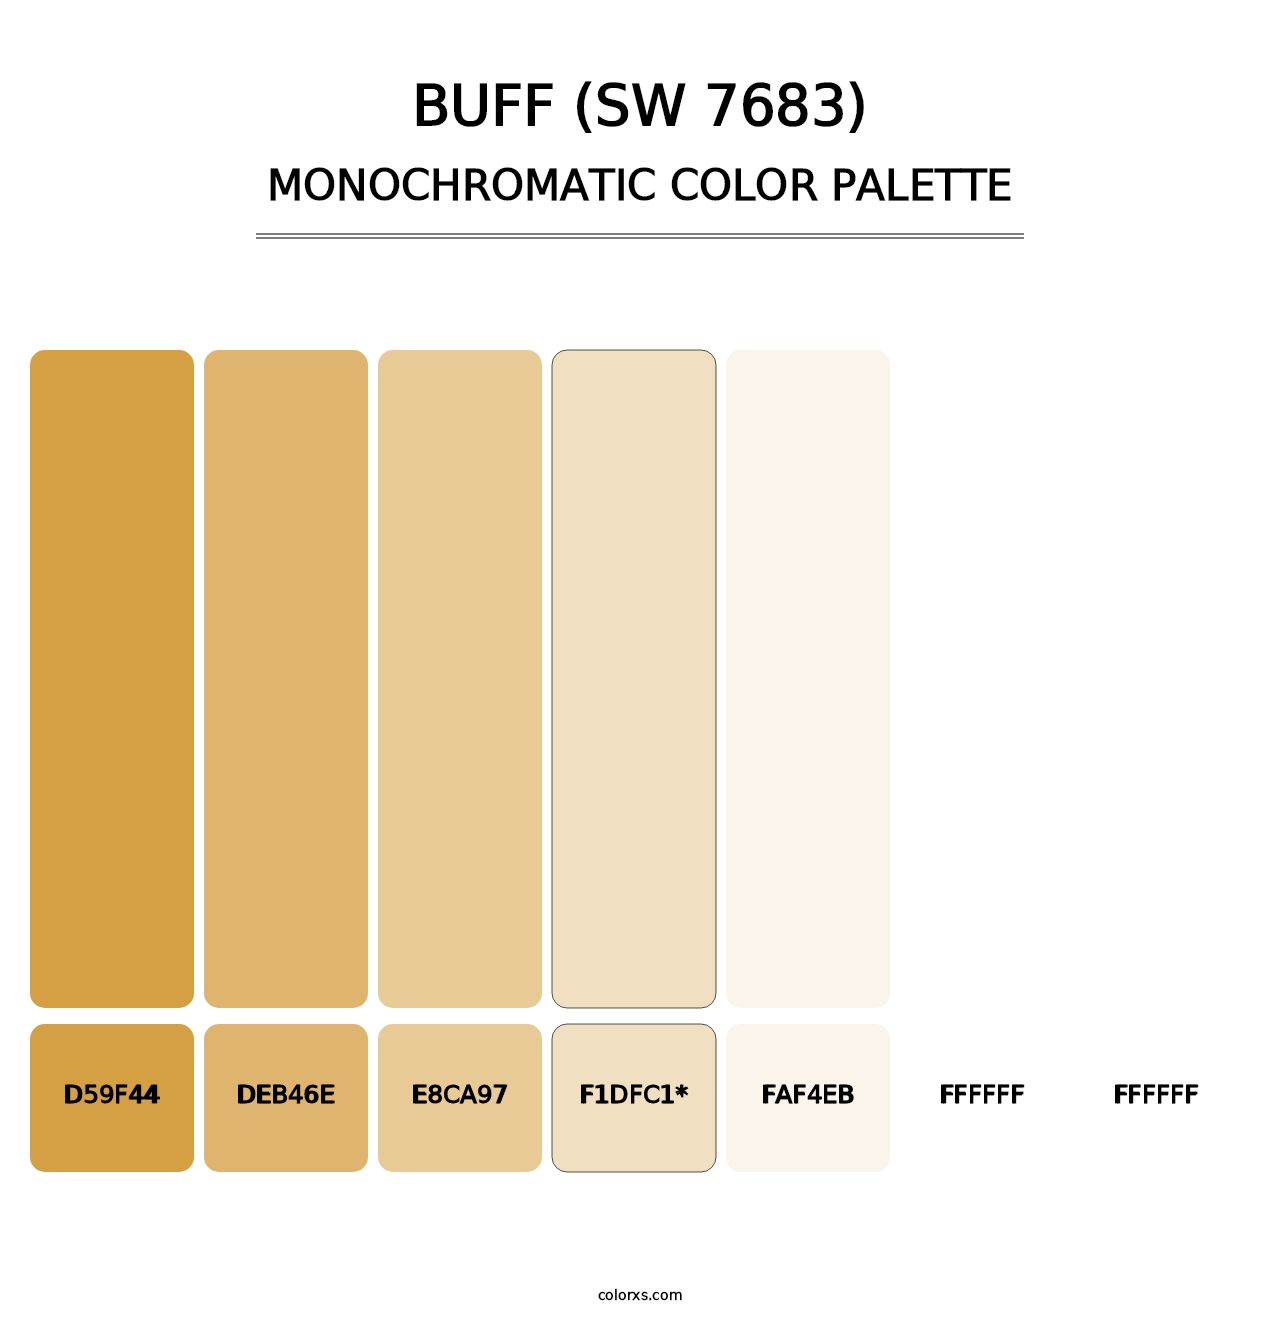 Buff (SW 7683) - Monochromatic Color Palette